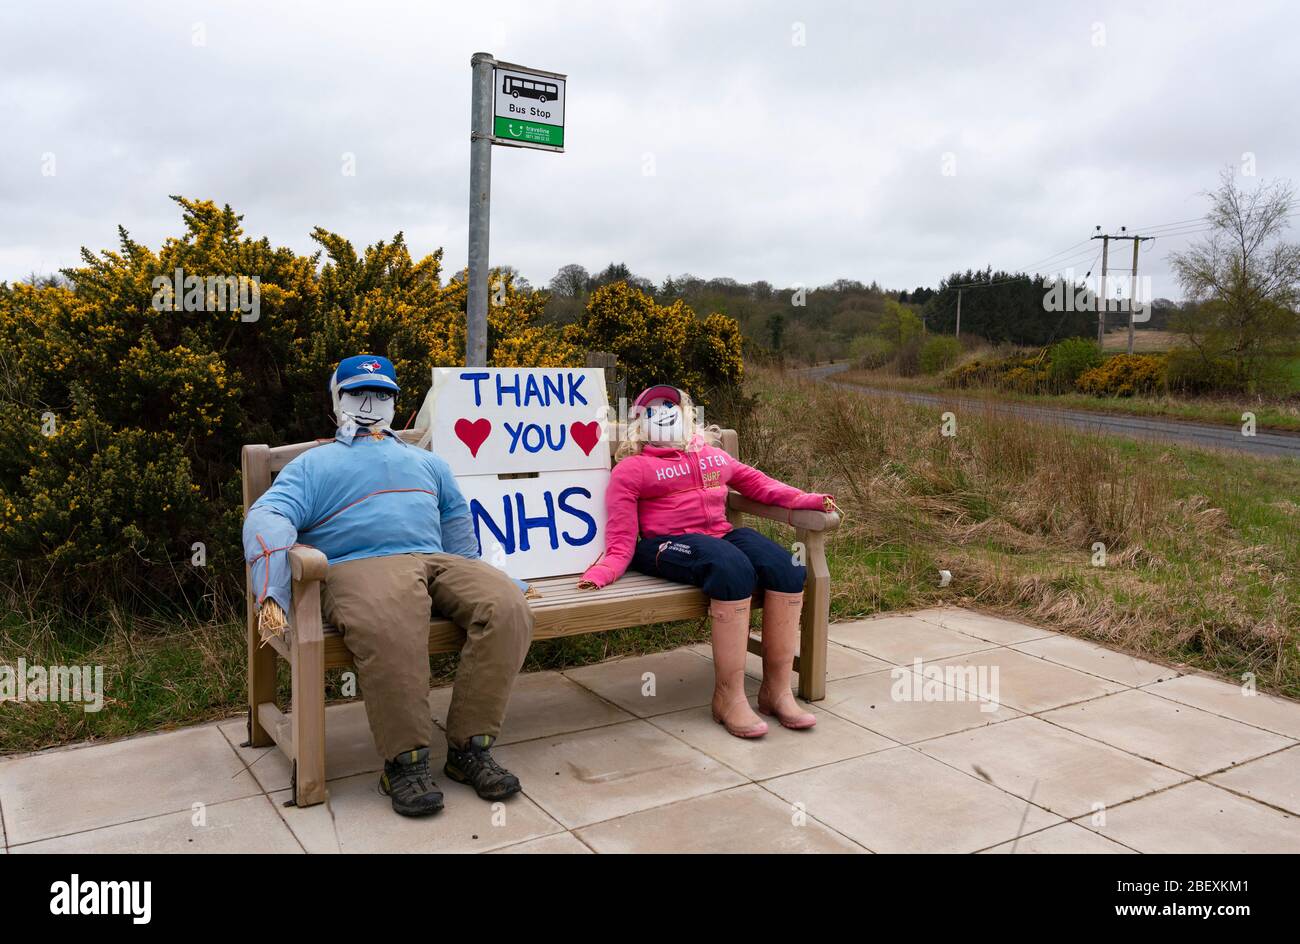 Polwarth, Scottish Borders, Scotland, UK. 16 aprile 2020. La fermata dell'autobus a Polwarth è stata trasformata in un messaggio di ringraziamento per l'NHS durante la pandemia di coronavirus. Iain Masterton/Alamy Live News Foto Stock